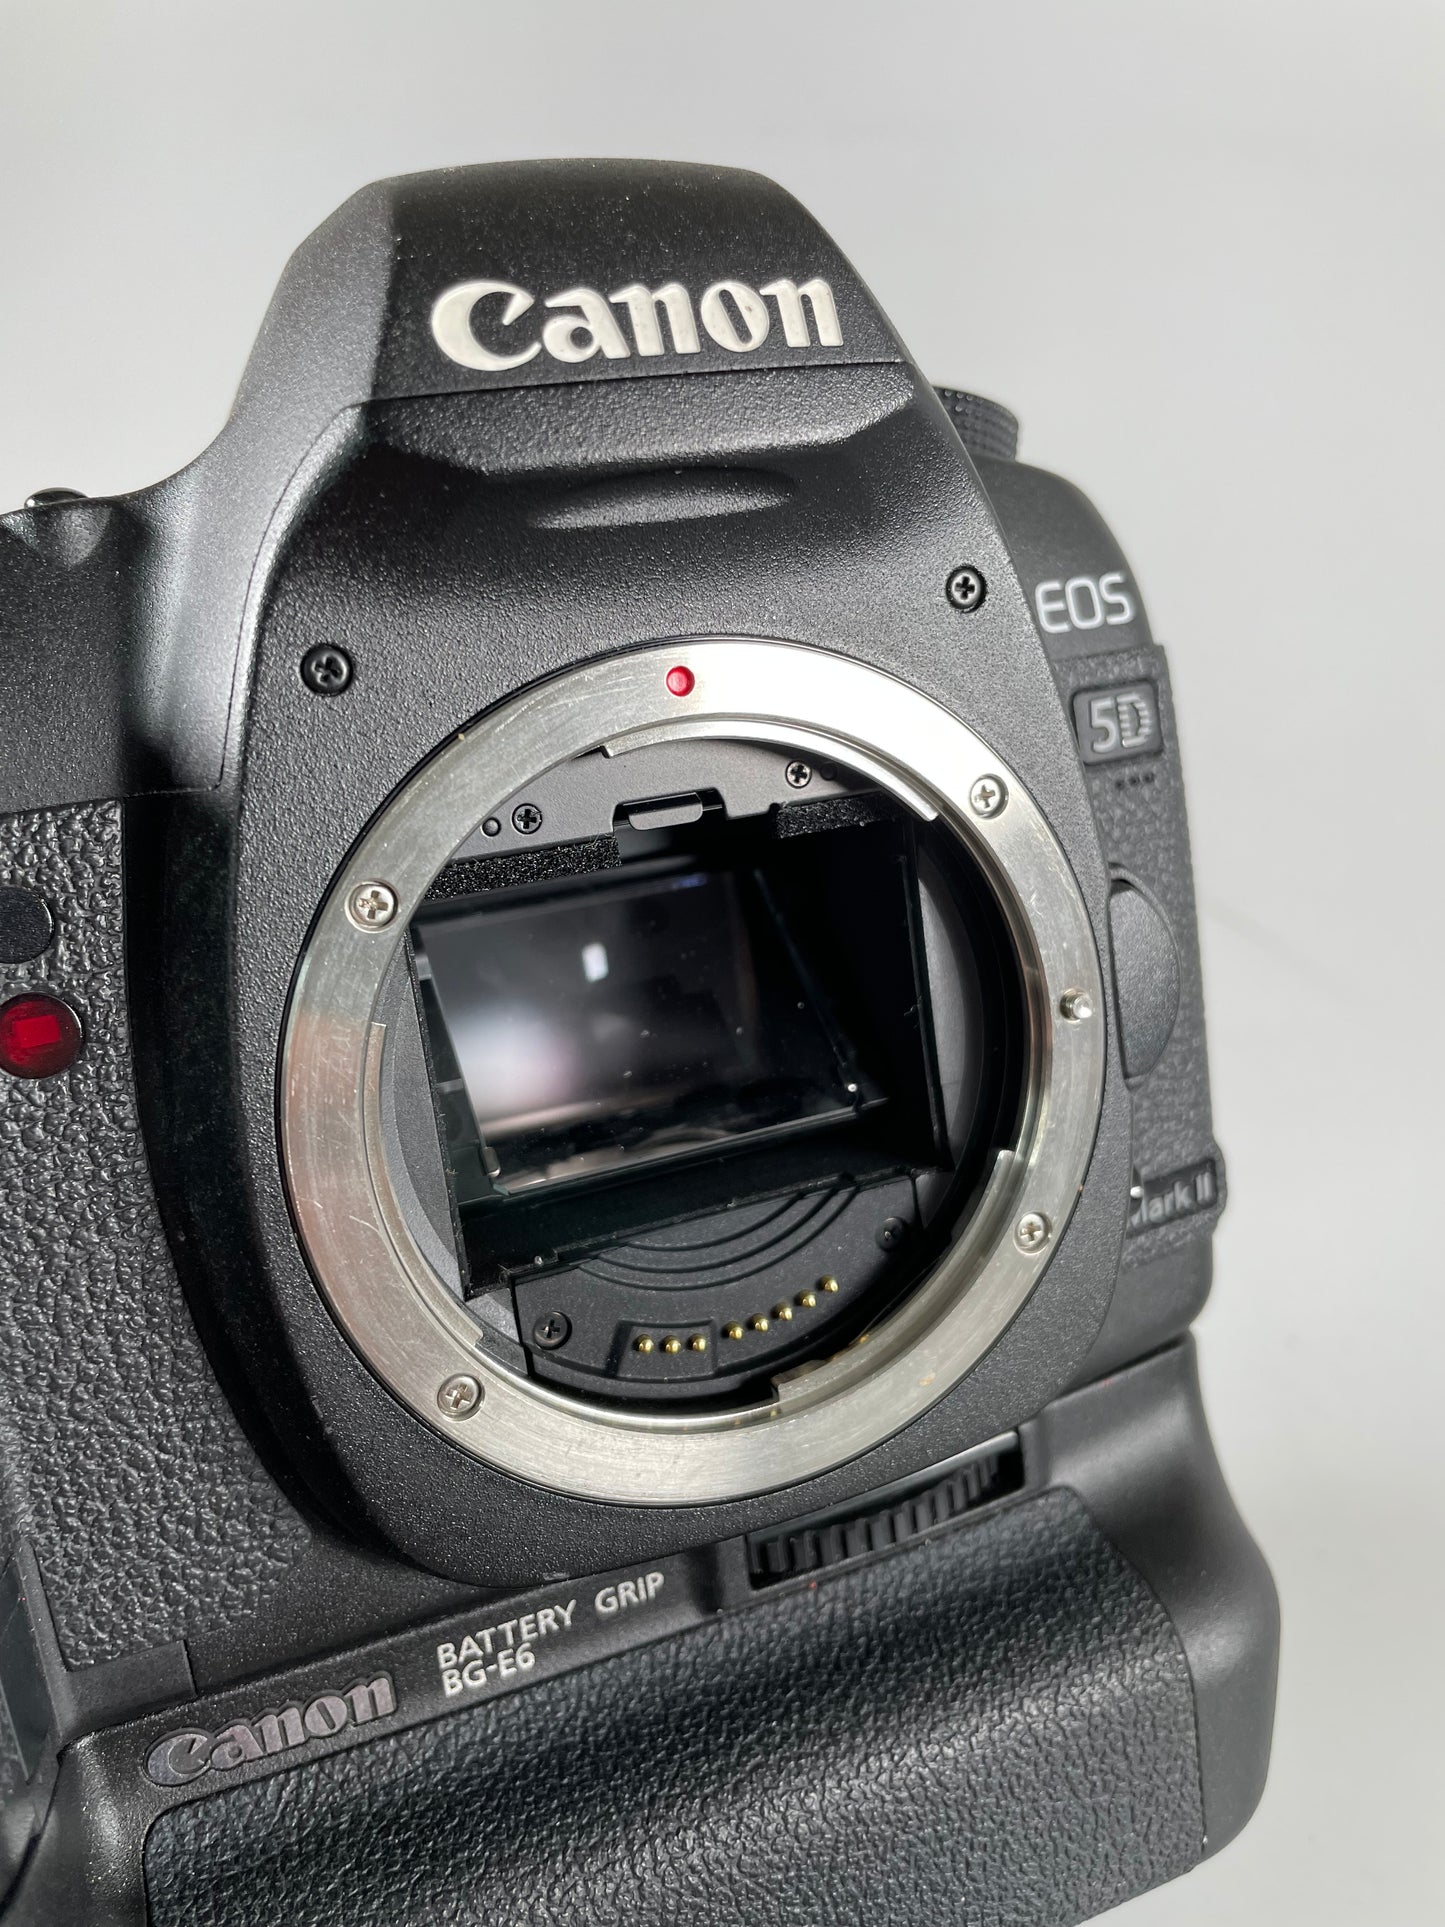 Canon 5d mark ii digital camera SLR Body w/ BG-E6 SC: 25k